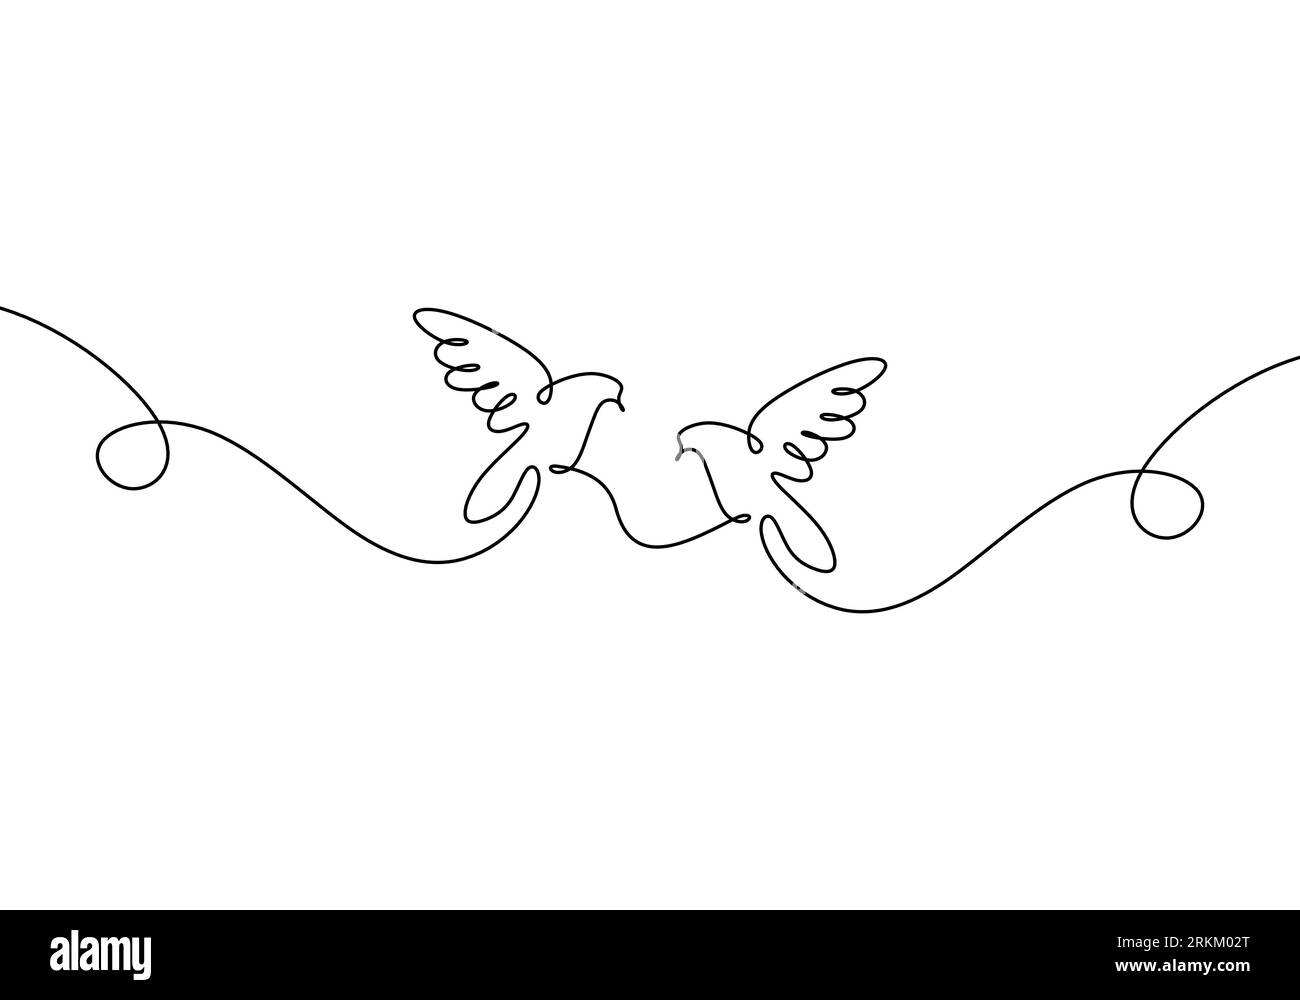 Disegno continuo a una linea di due piccioni volanti Illustrazione Vettoriale